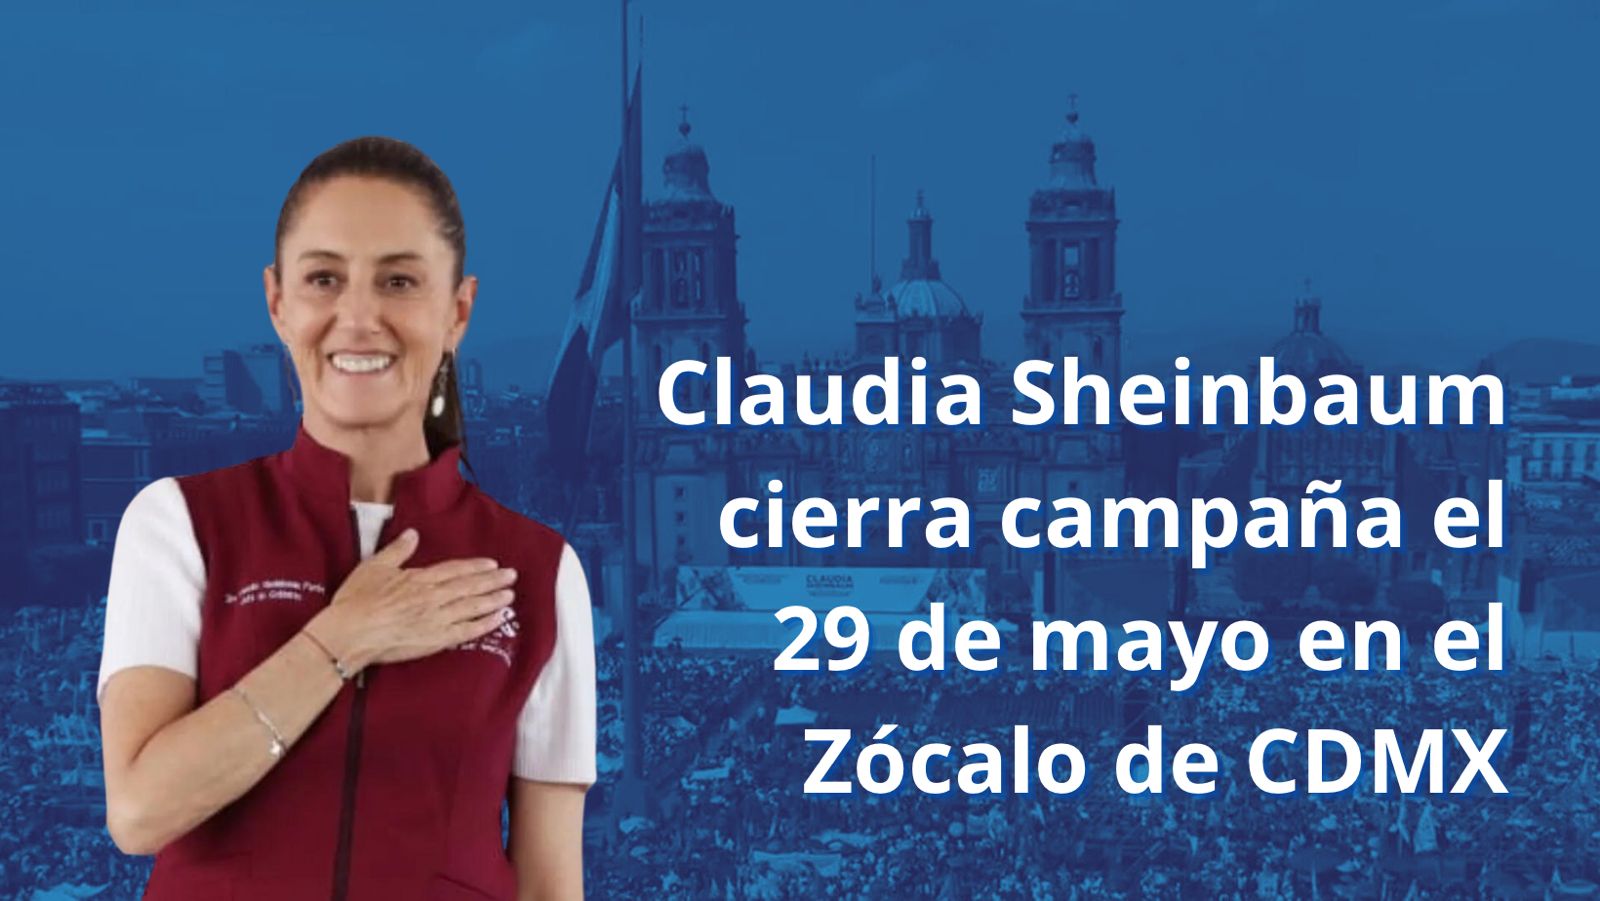 Claudia Sheinbaum cierra campaña el 29 de mayo en el Zócalo de CDMX